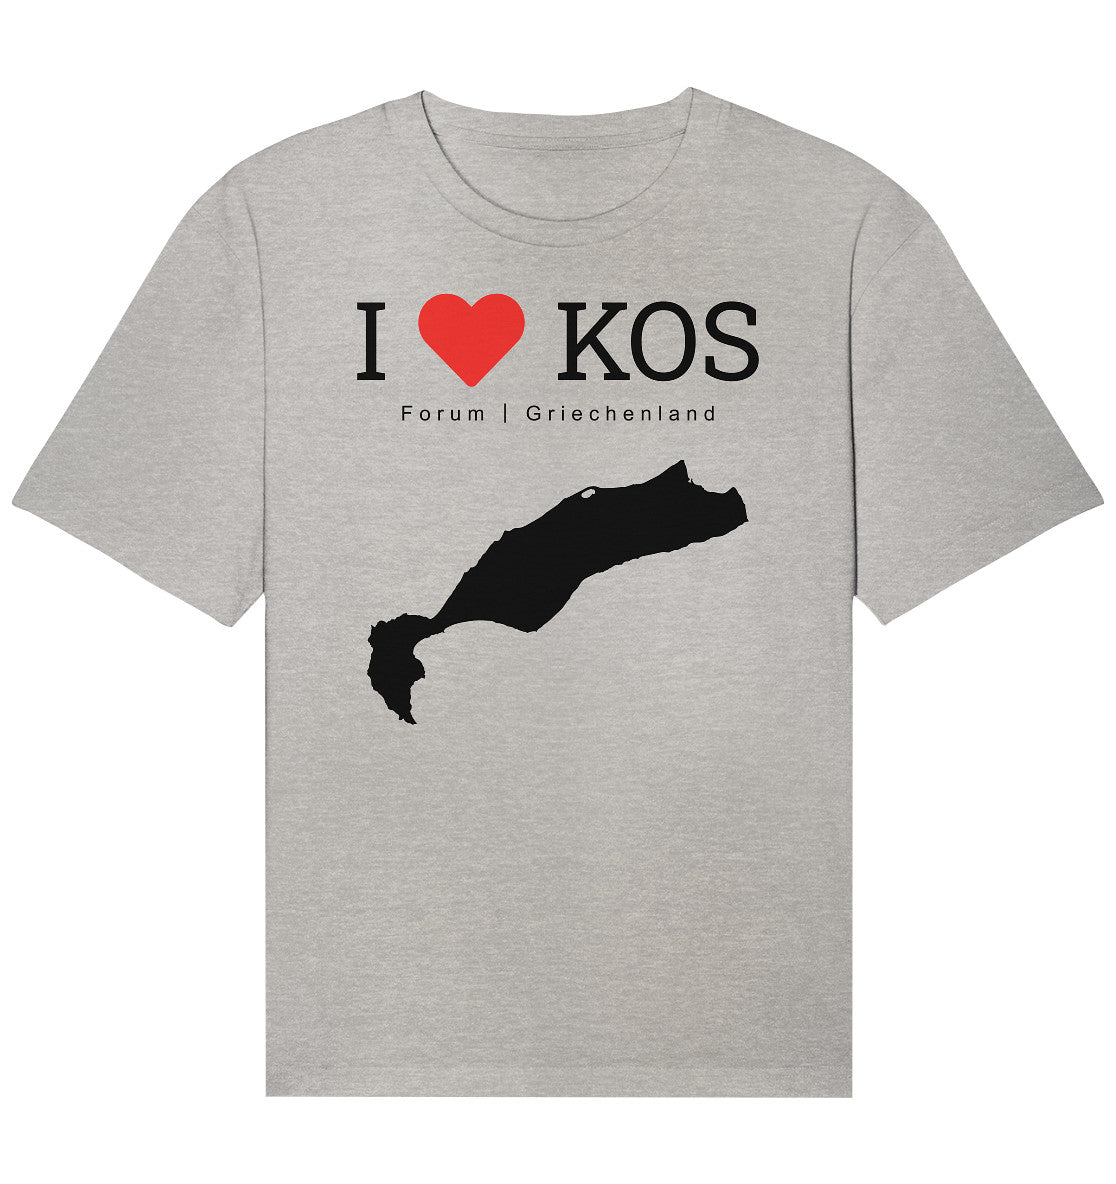 I LOVE KOS - Forum Griechenland Black - Organic Relaxed Shirt